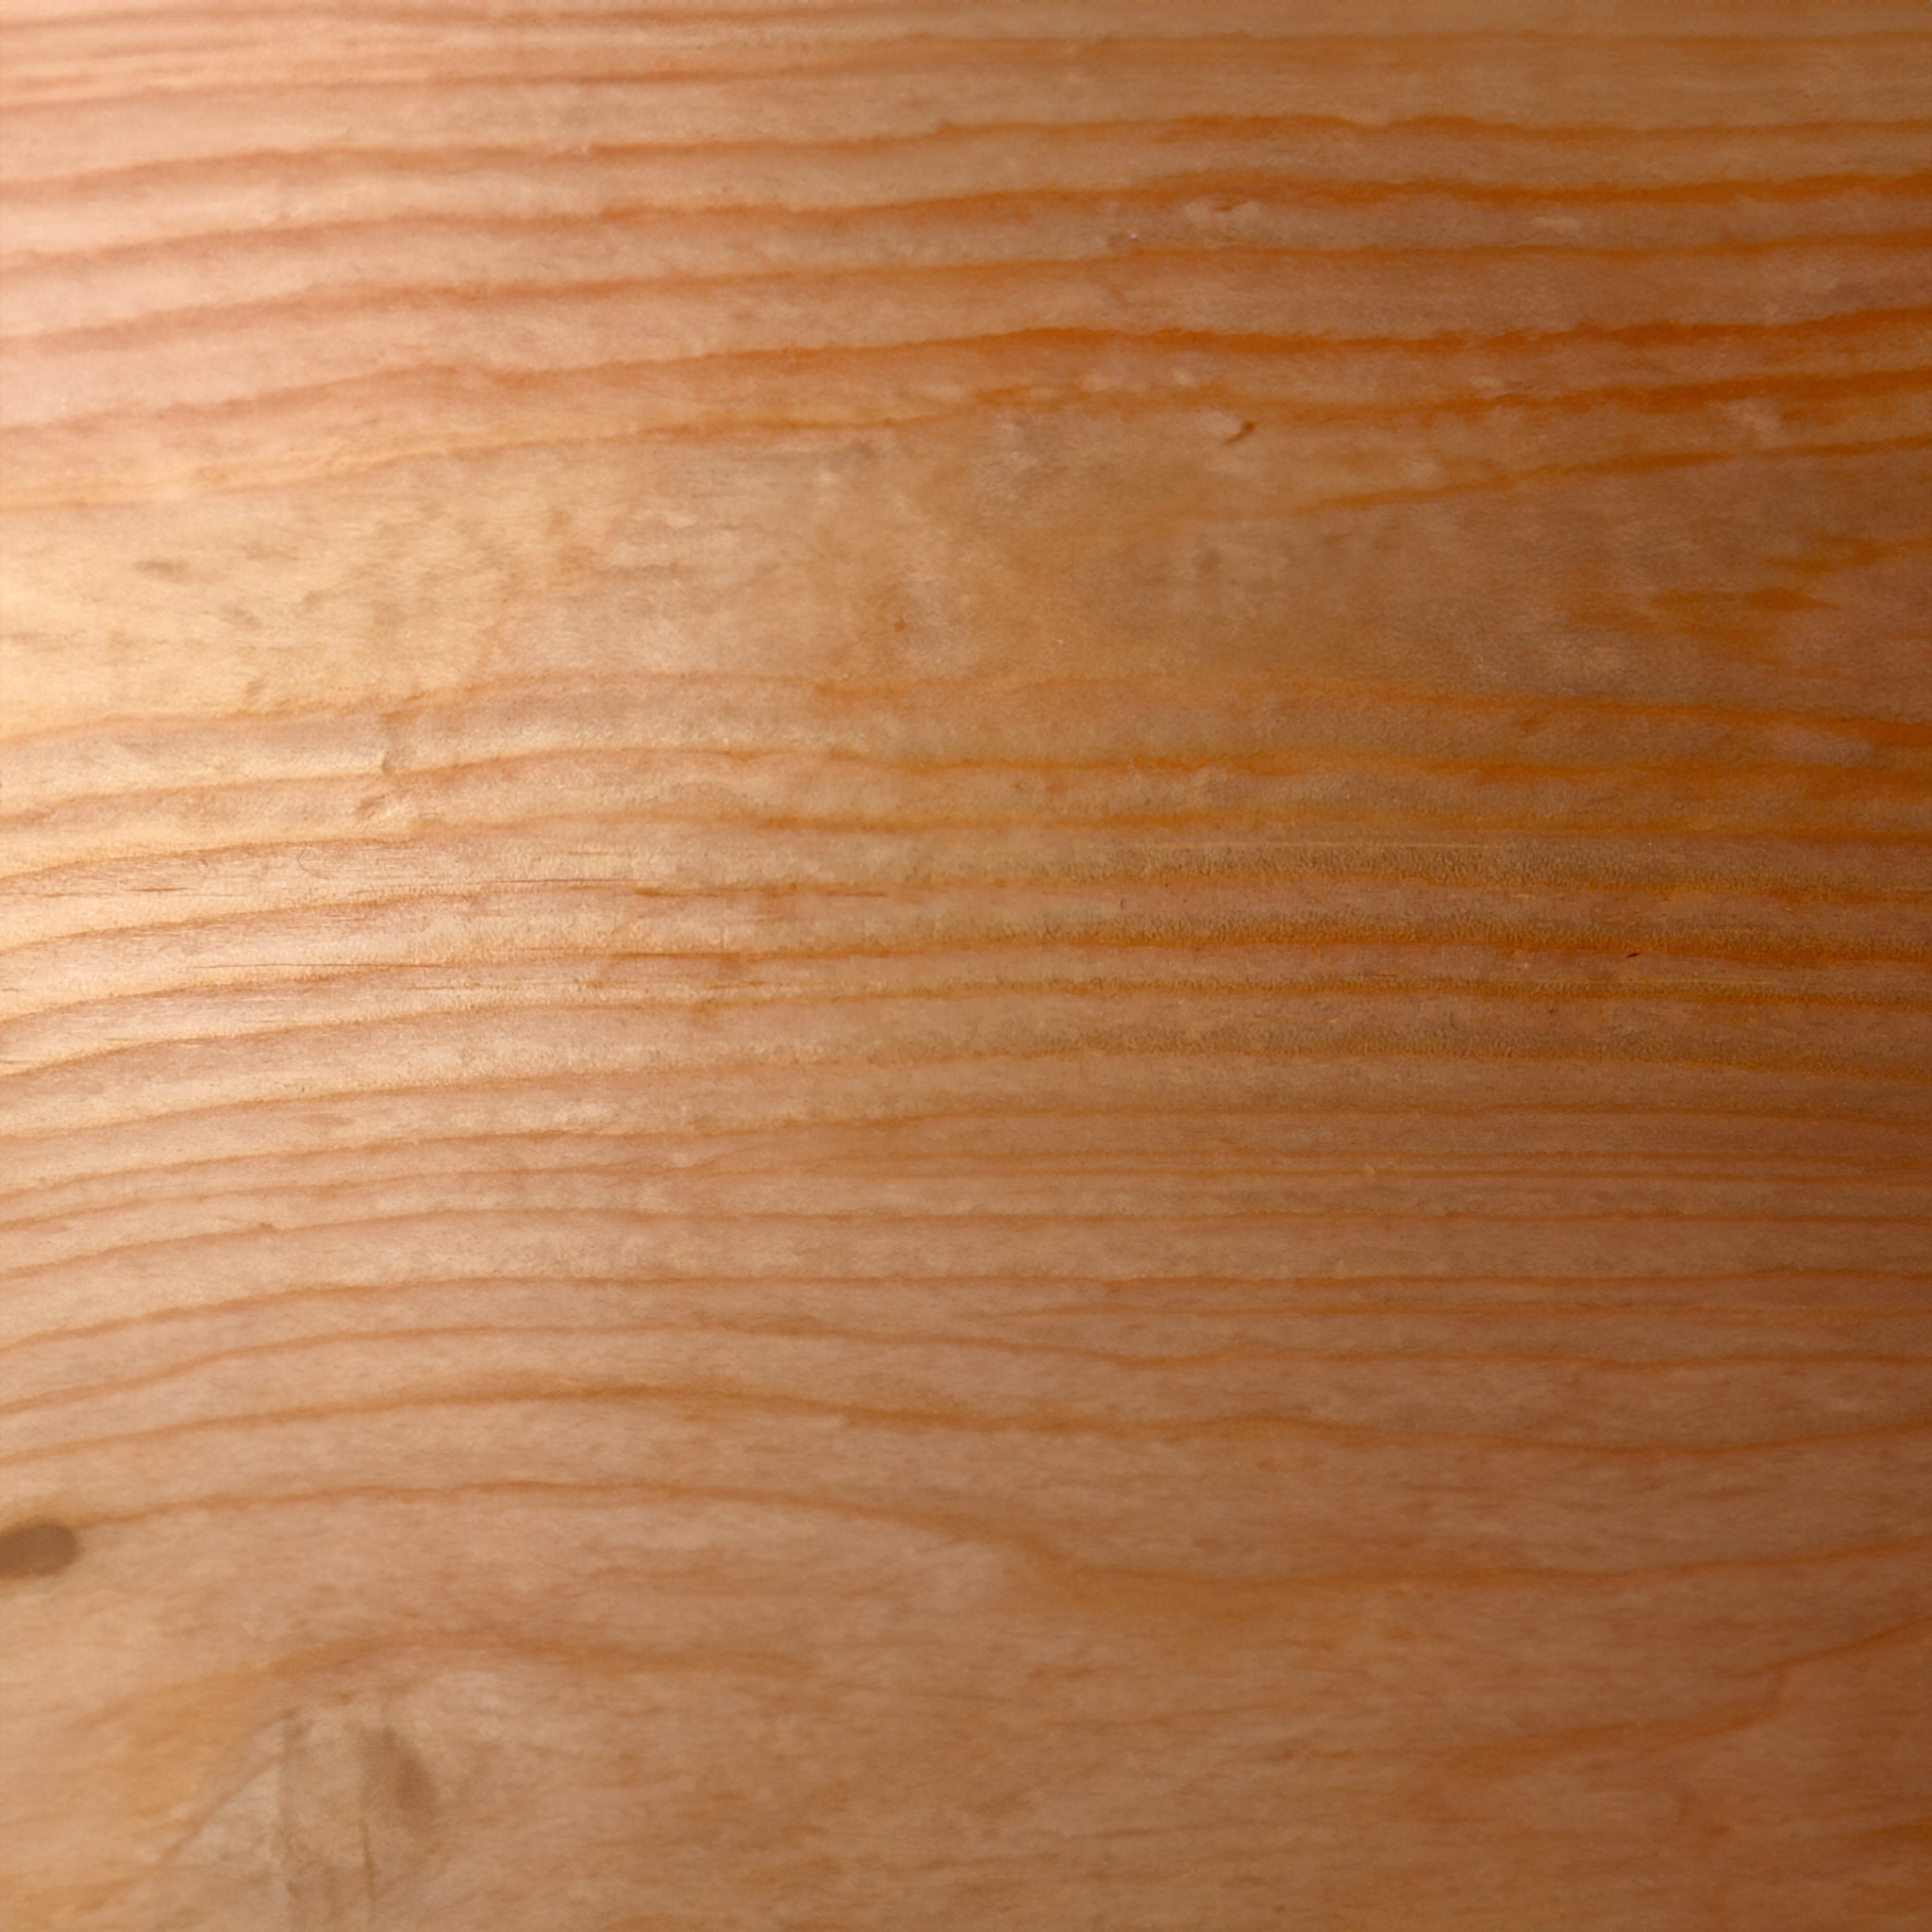 Fichte o nachhaltige Holzpflege aus 100% natürlichen Inhaltsstoffen. studio moreandless